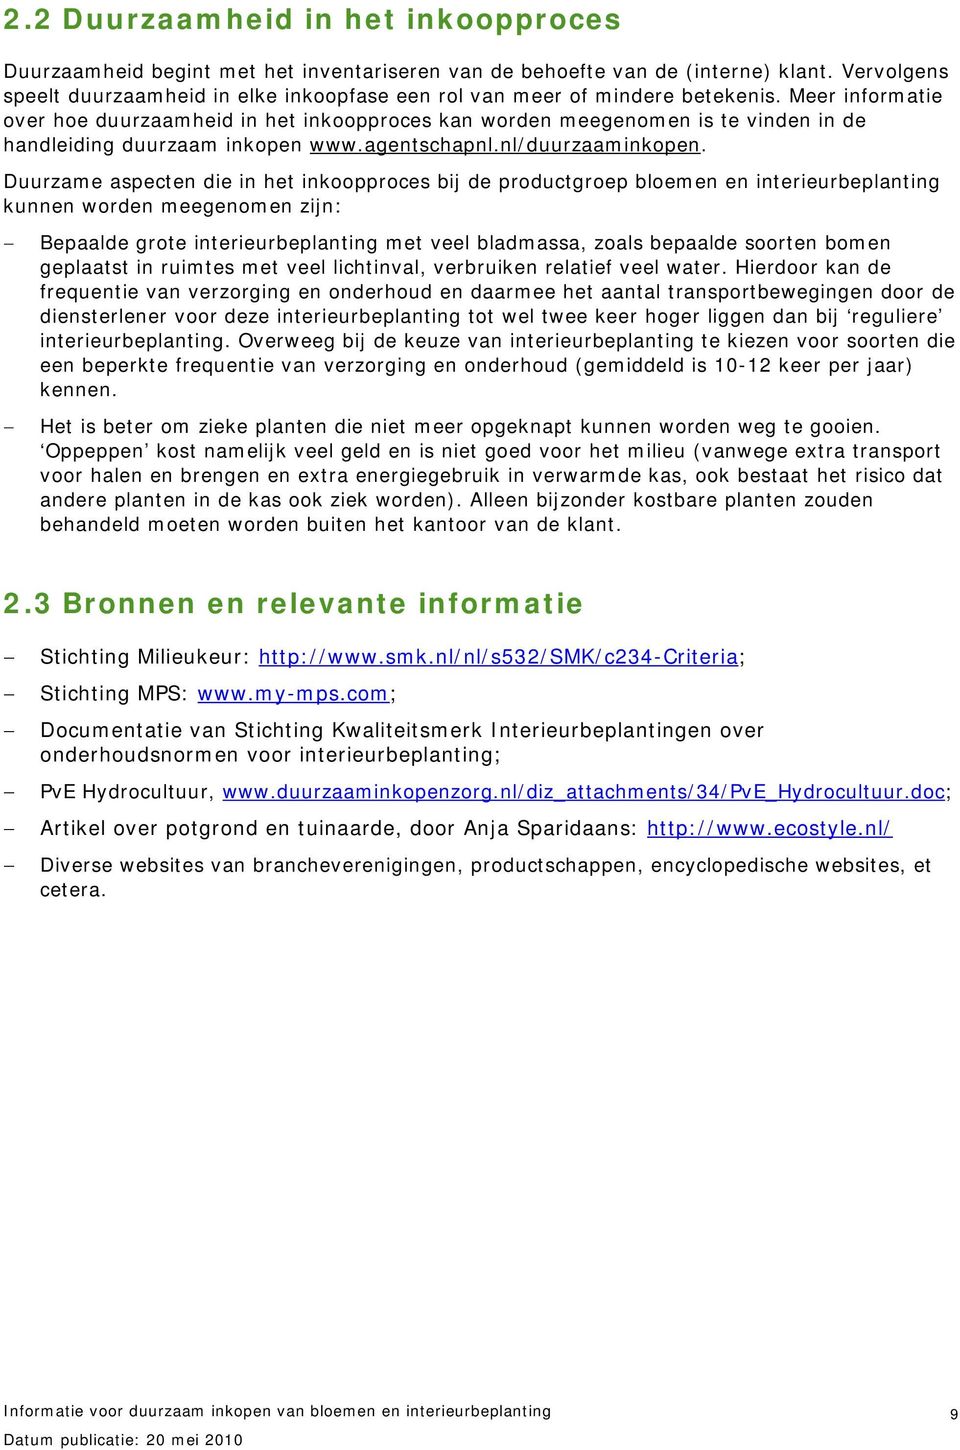 Meer informatie over hoe duurzaamheid in het inkoopproces kan worden meegenomen is te vinden in de handleiding duurzaam inkopen www.agentschapnl.nl/duurzaaminkopen.